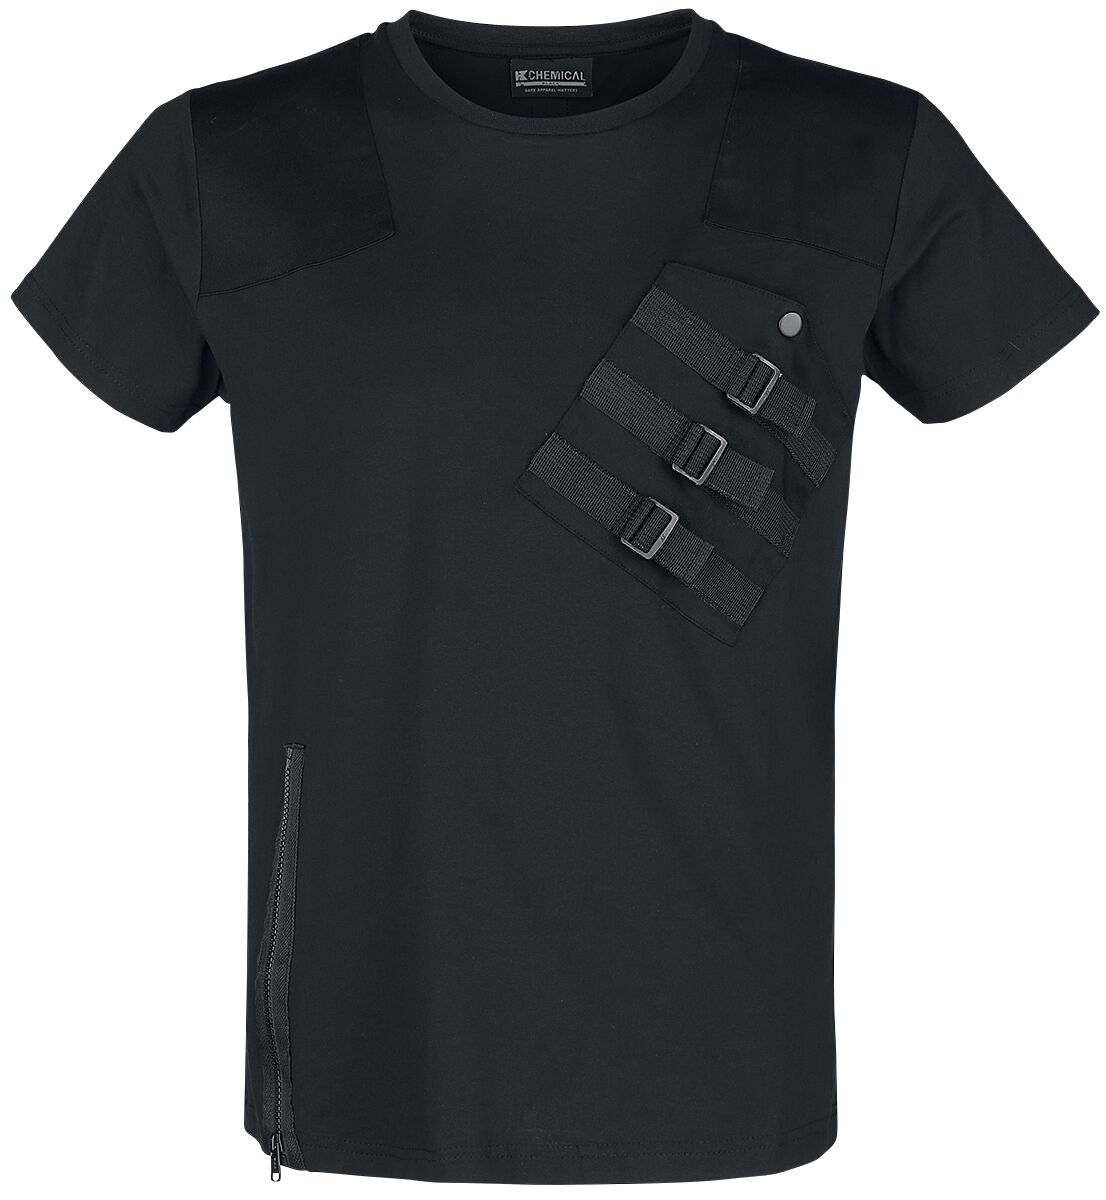 Chemical Black - Gothic T-Shirt - Cadet Top - S bis 3XL - für Männer - Größe 3XL - schwarz